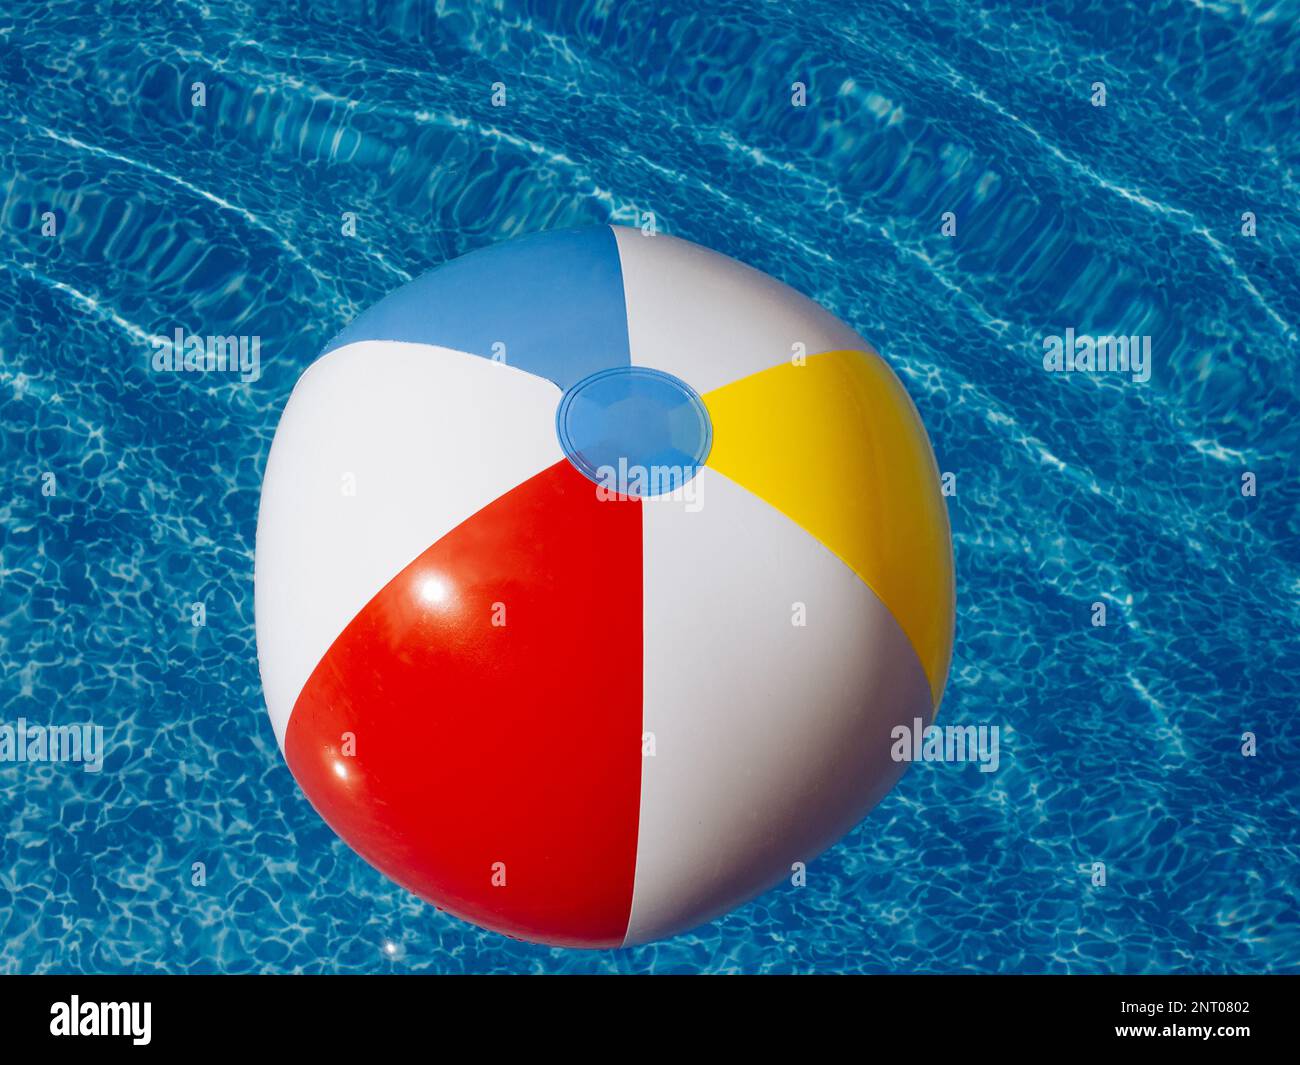 Ballon gonflable coloré flottant sur l'eau dans la piscine Photo Stock -  Alamy